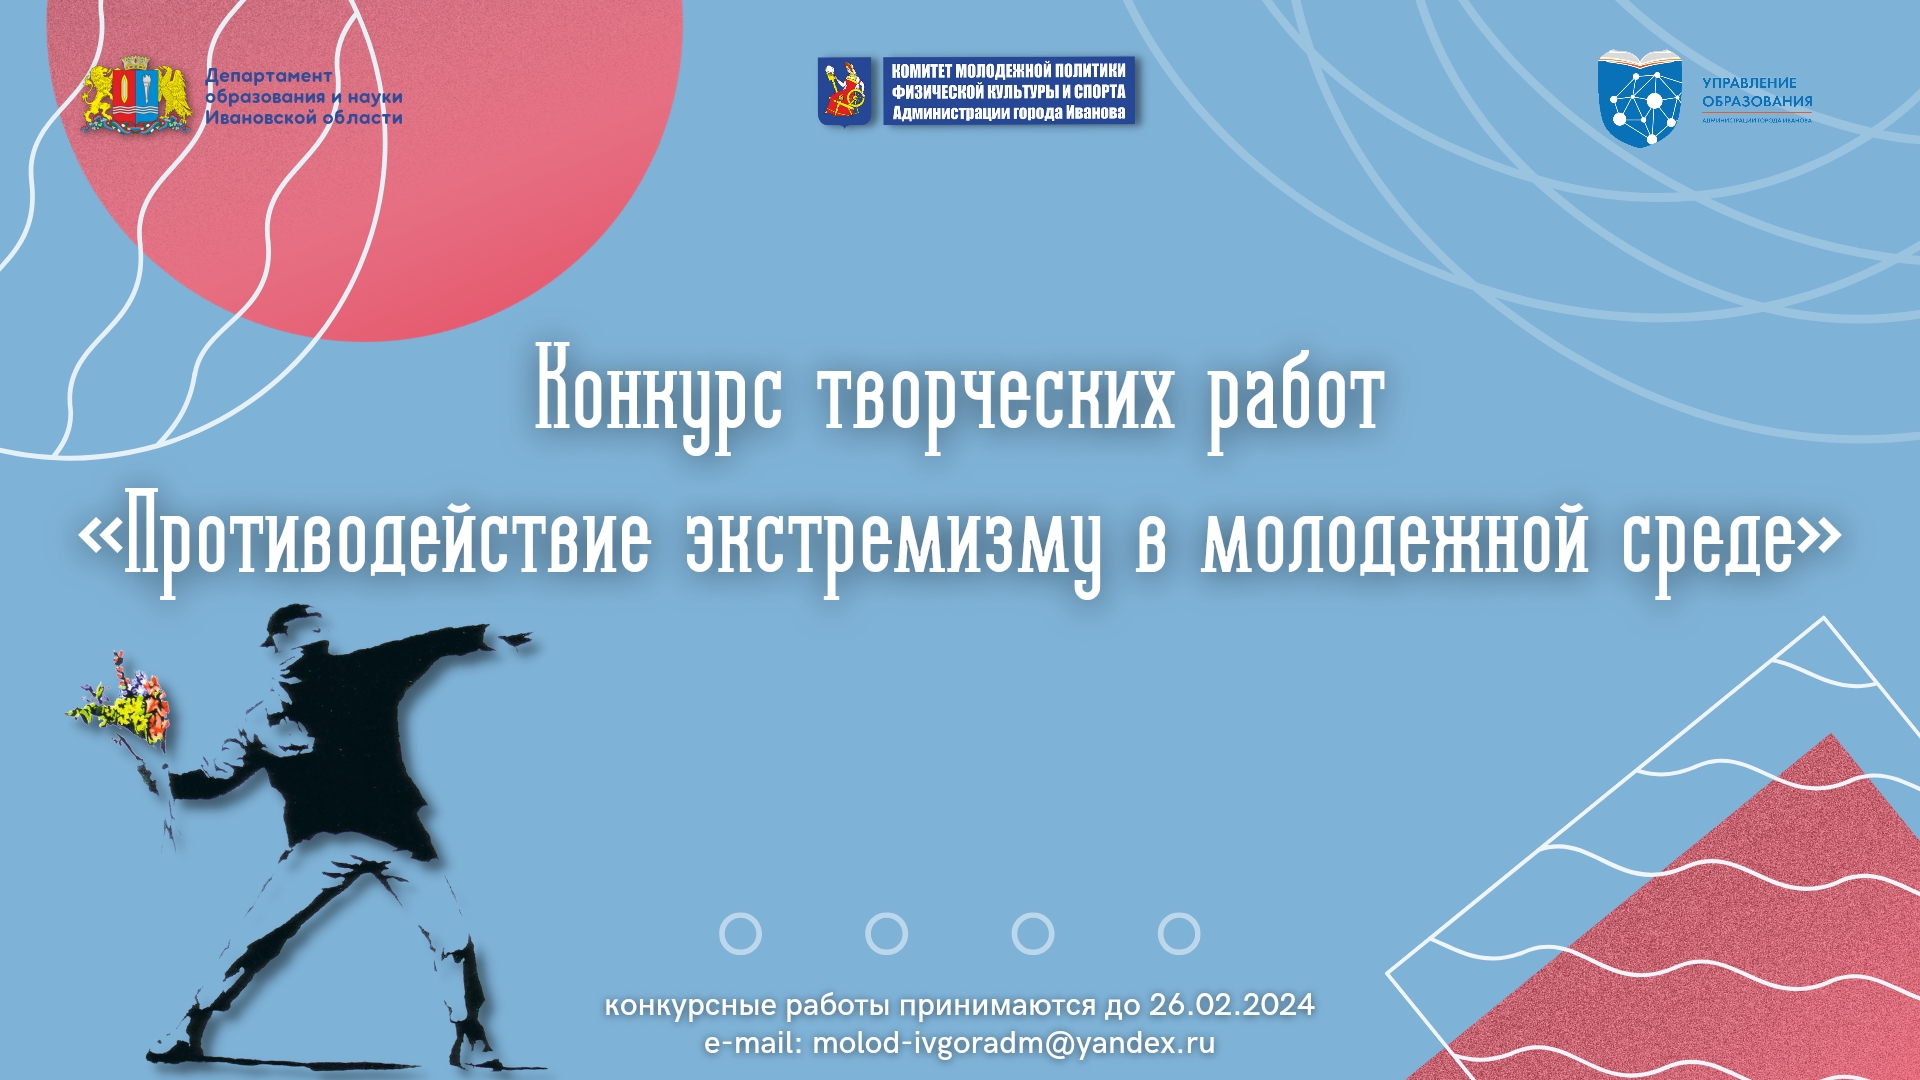 В Иванове стартовал конкурс творческих работ по противодействию экстремизму в молодежной среде.